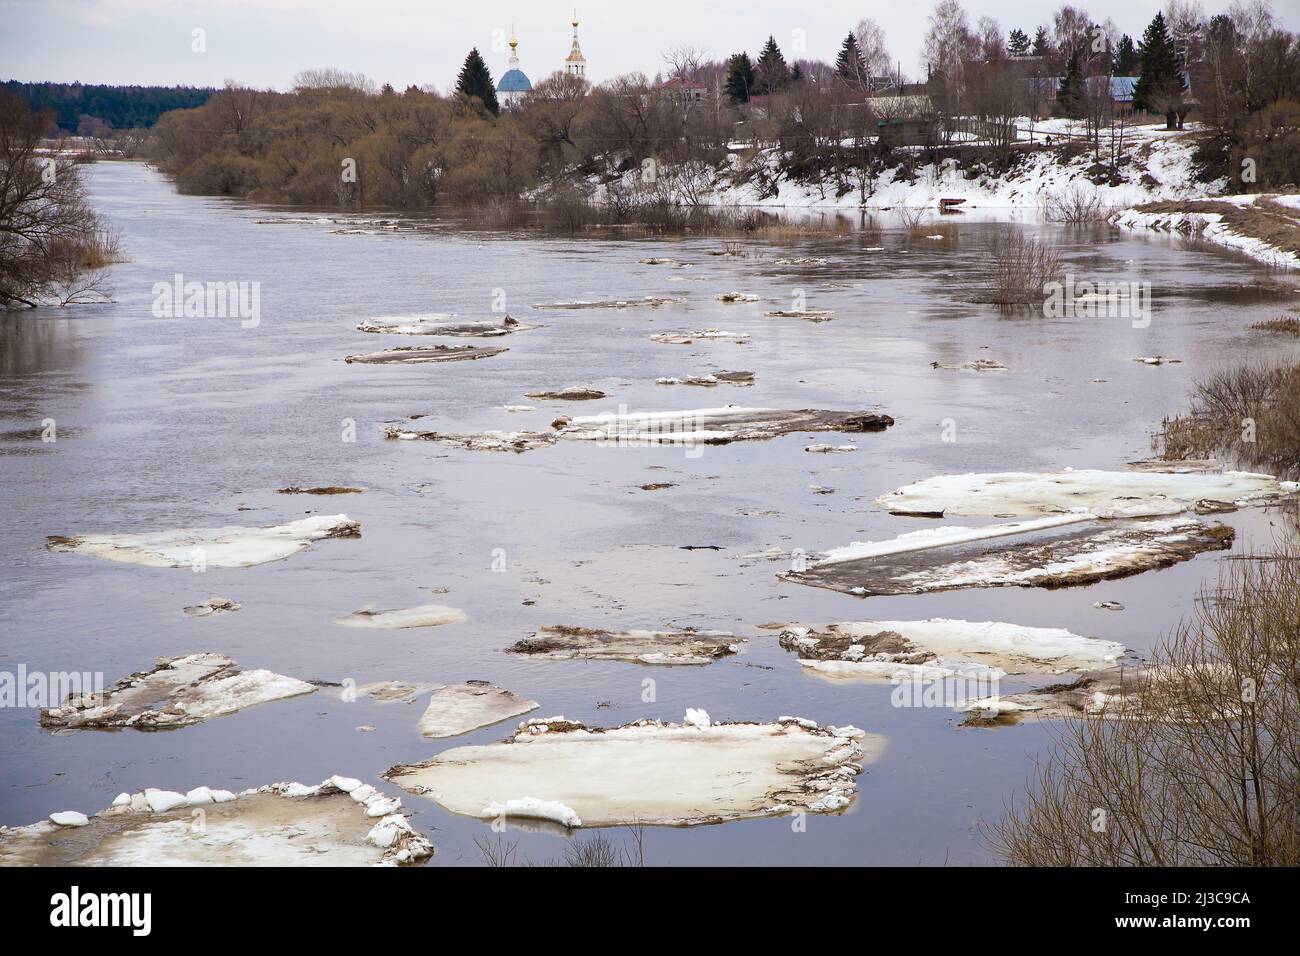 Eine Gruppe großer weißer Eisschollen schwimmt den Fluss hinunter. Frühling, Schnee schmilzt, trockenes Gras rundherum, Überschwemmungen beginnen und der Fluss überfließt. Tag, bewölktes Wetter, weiches warmes Licht. Stockfoto